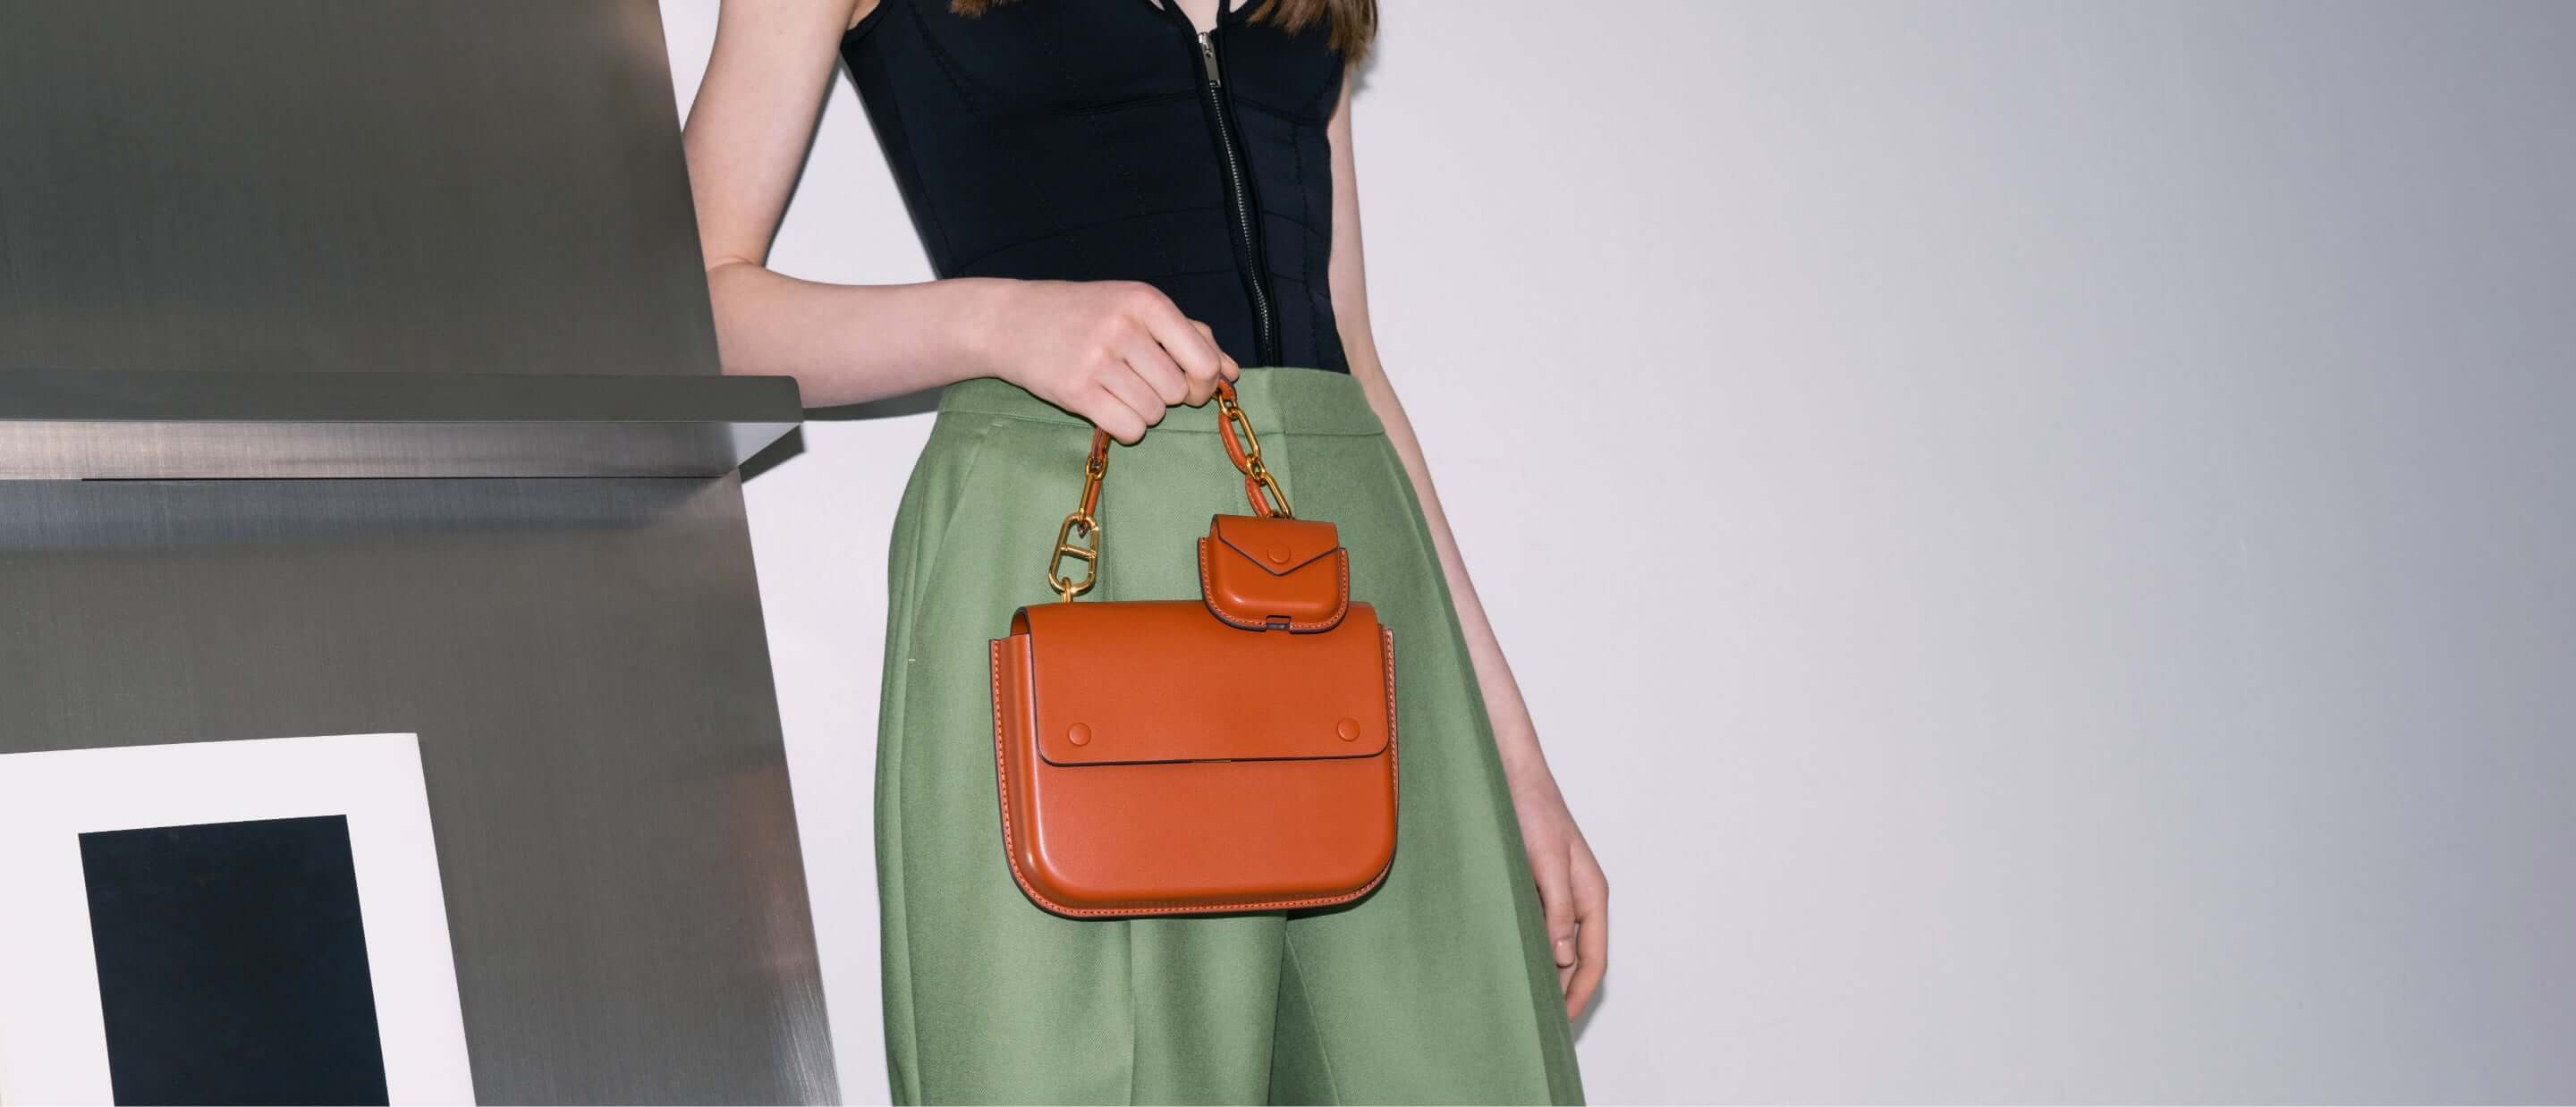 Women’s Amber chain handle push-lock handbag - CHARLES & KEITH